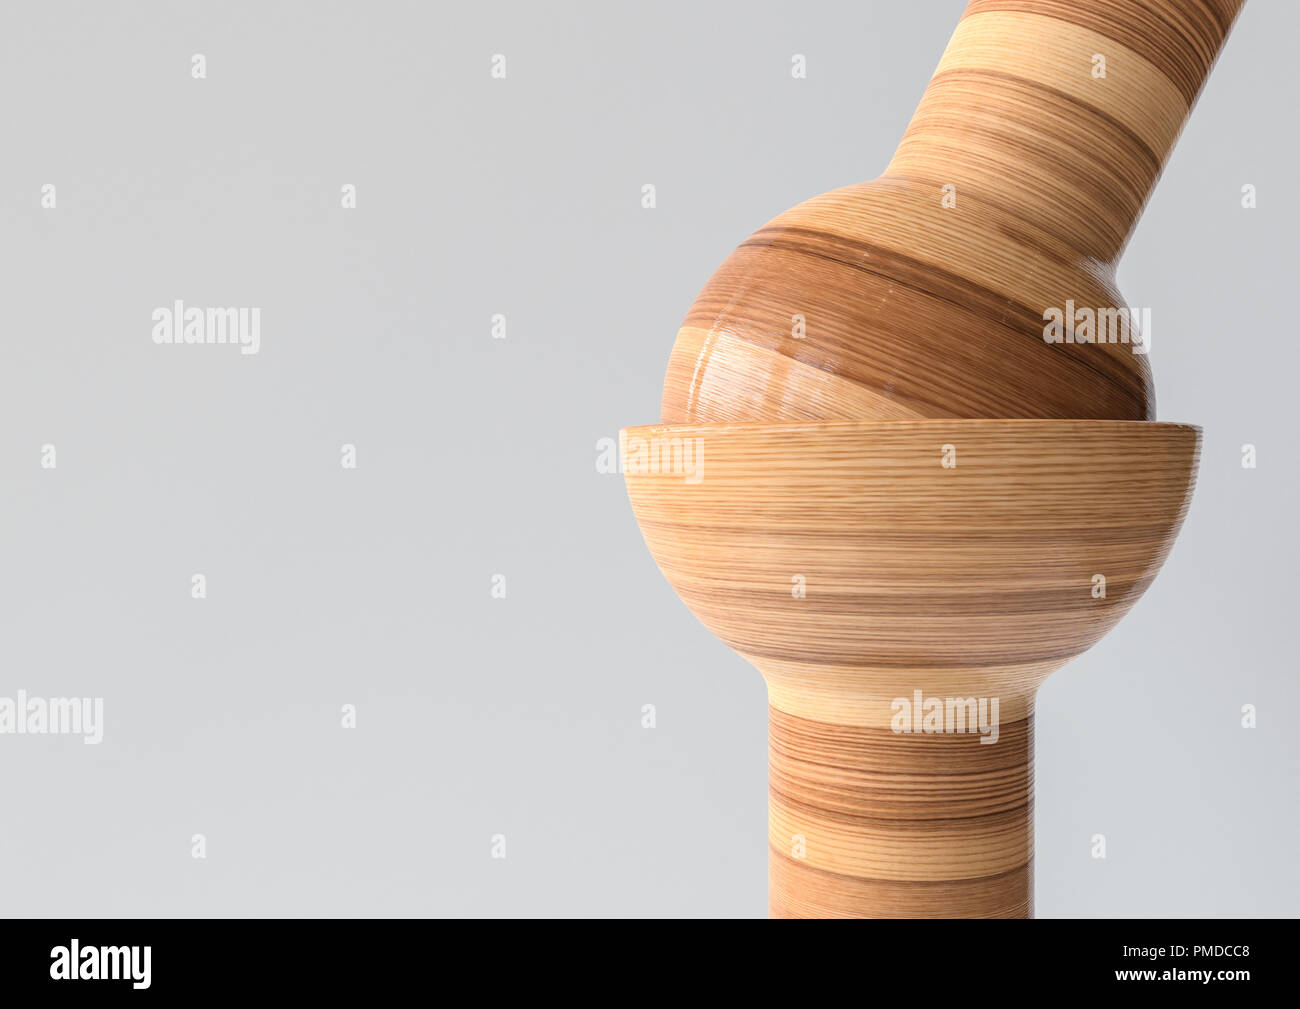 Das Kugelgelenk - Gemeinsame Arten von Knochen in Holzoptik - 3D-Rendering Stockfoto